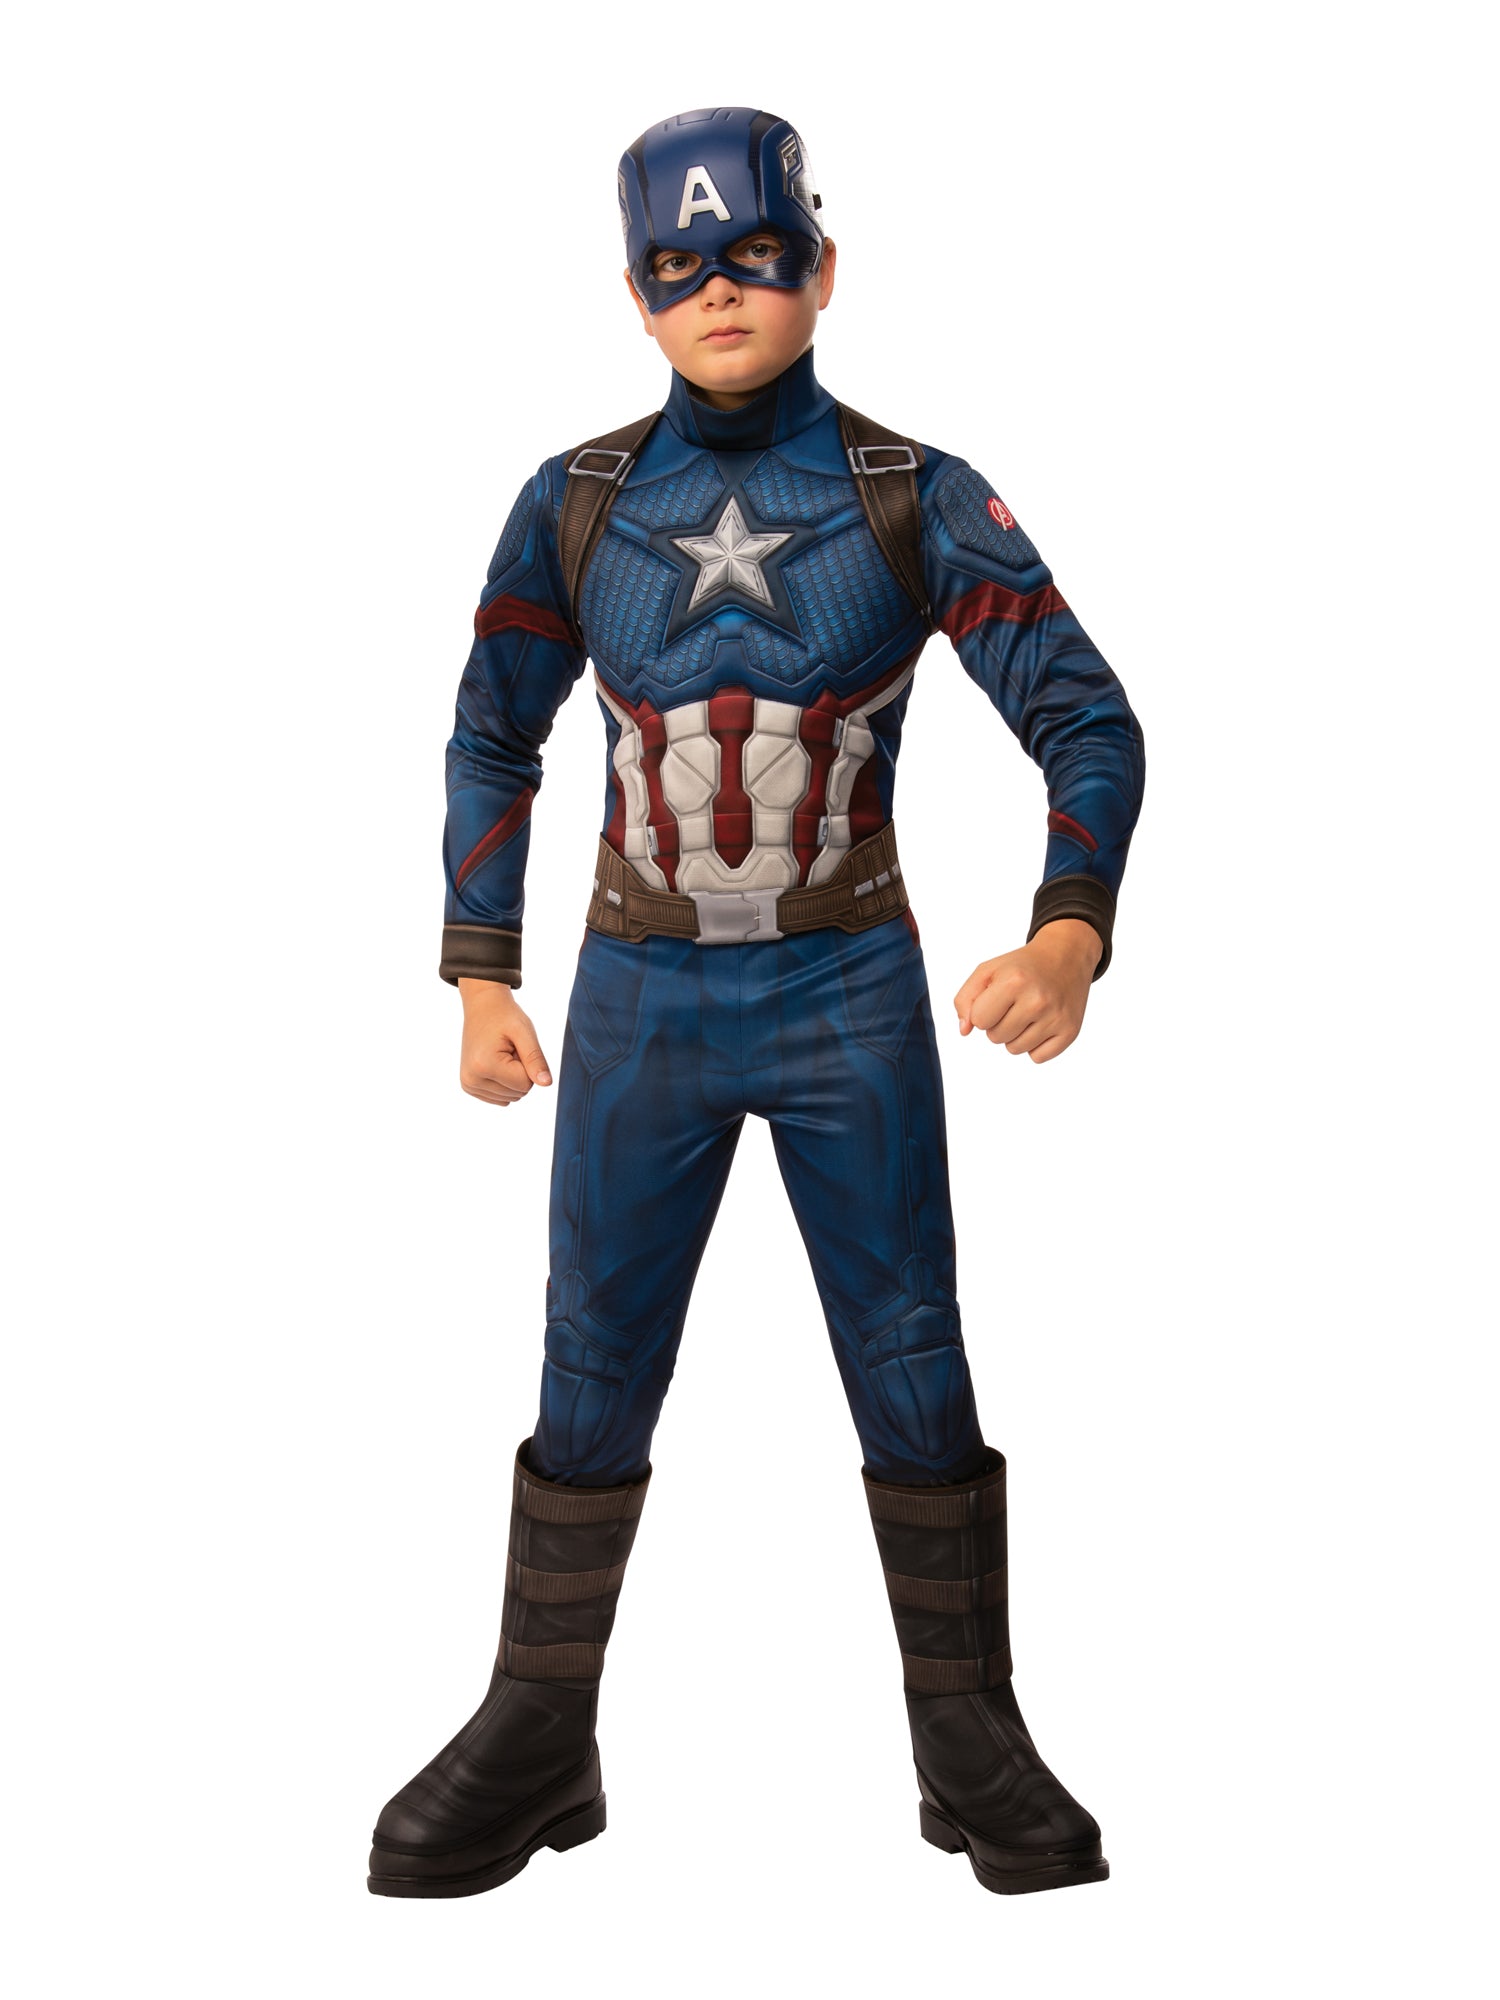 Captain America, Endgame, Avengers, Endgame, Multi, Marvel, Kids Costumes, Large, Front